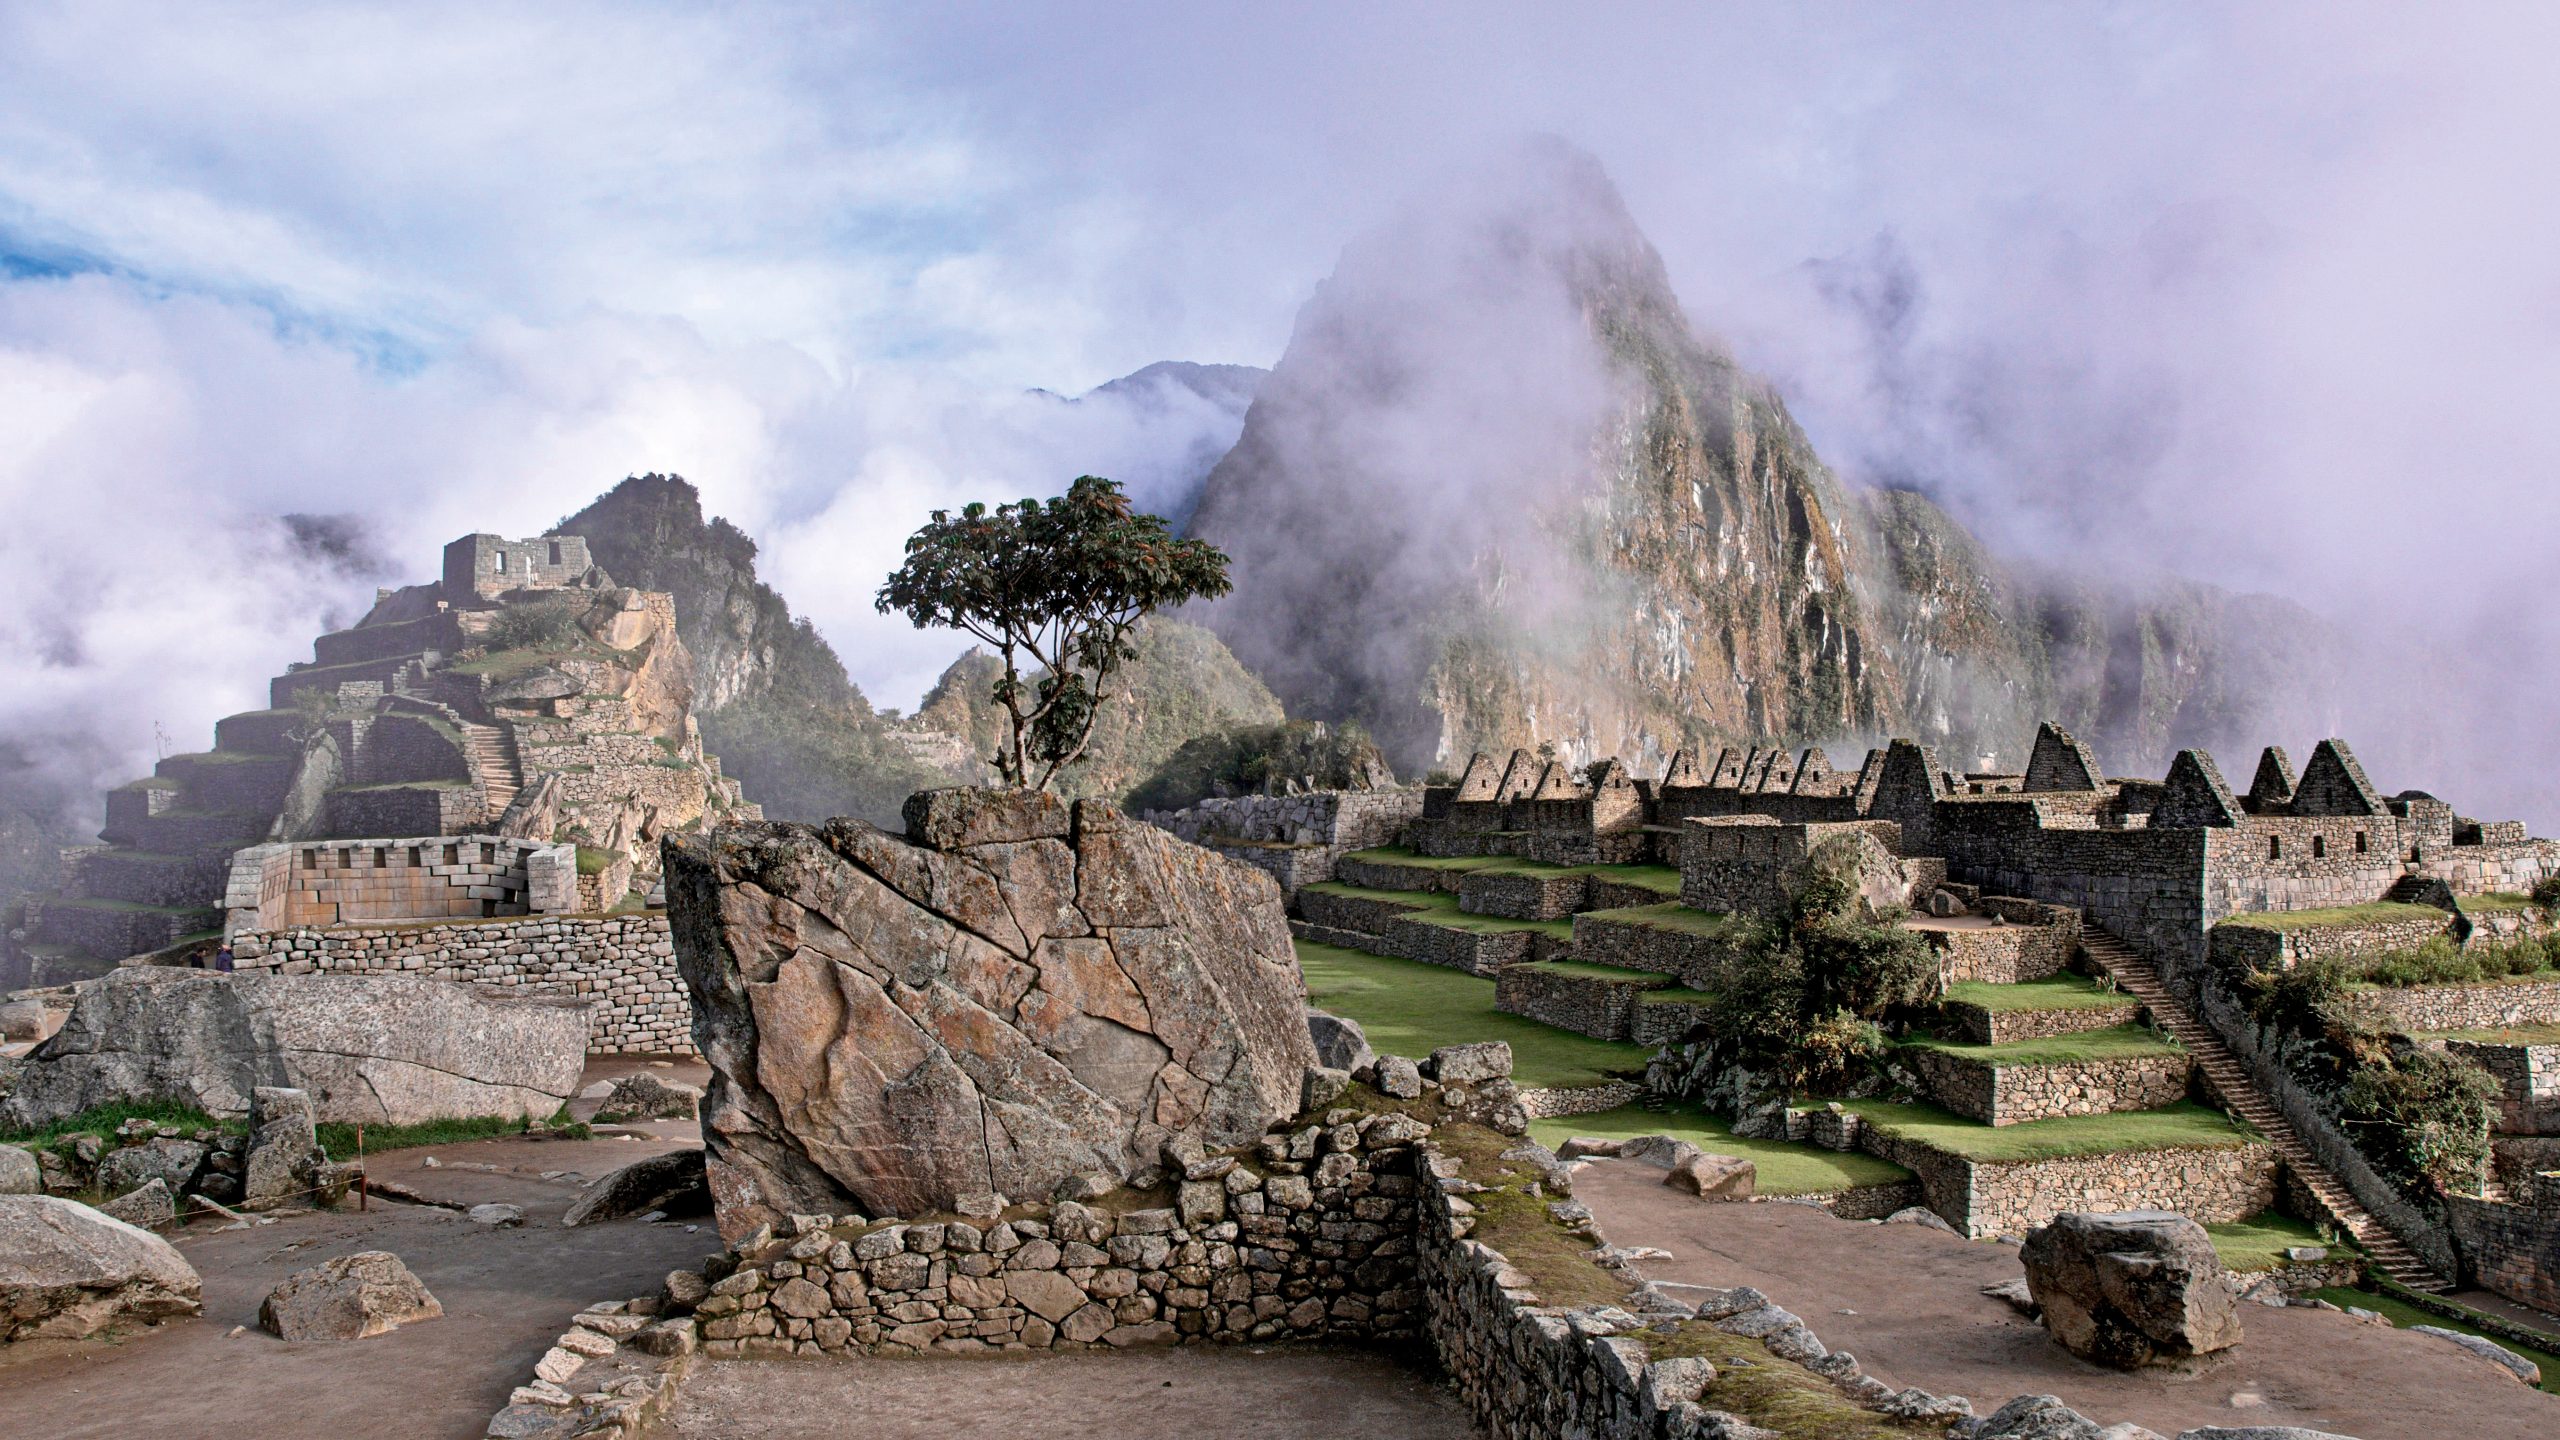 La città sacra di Machu Picchu (1450 – 1572) Veduta del sito archeologico Valle dell’Urubamba, altopiano meridionale Cultura Inca (1438 – 1532 ca d.C). Ph. ©Tomas Sobek